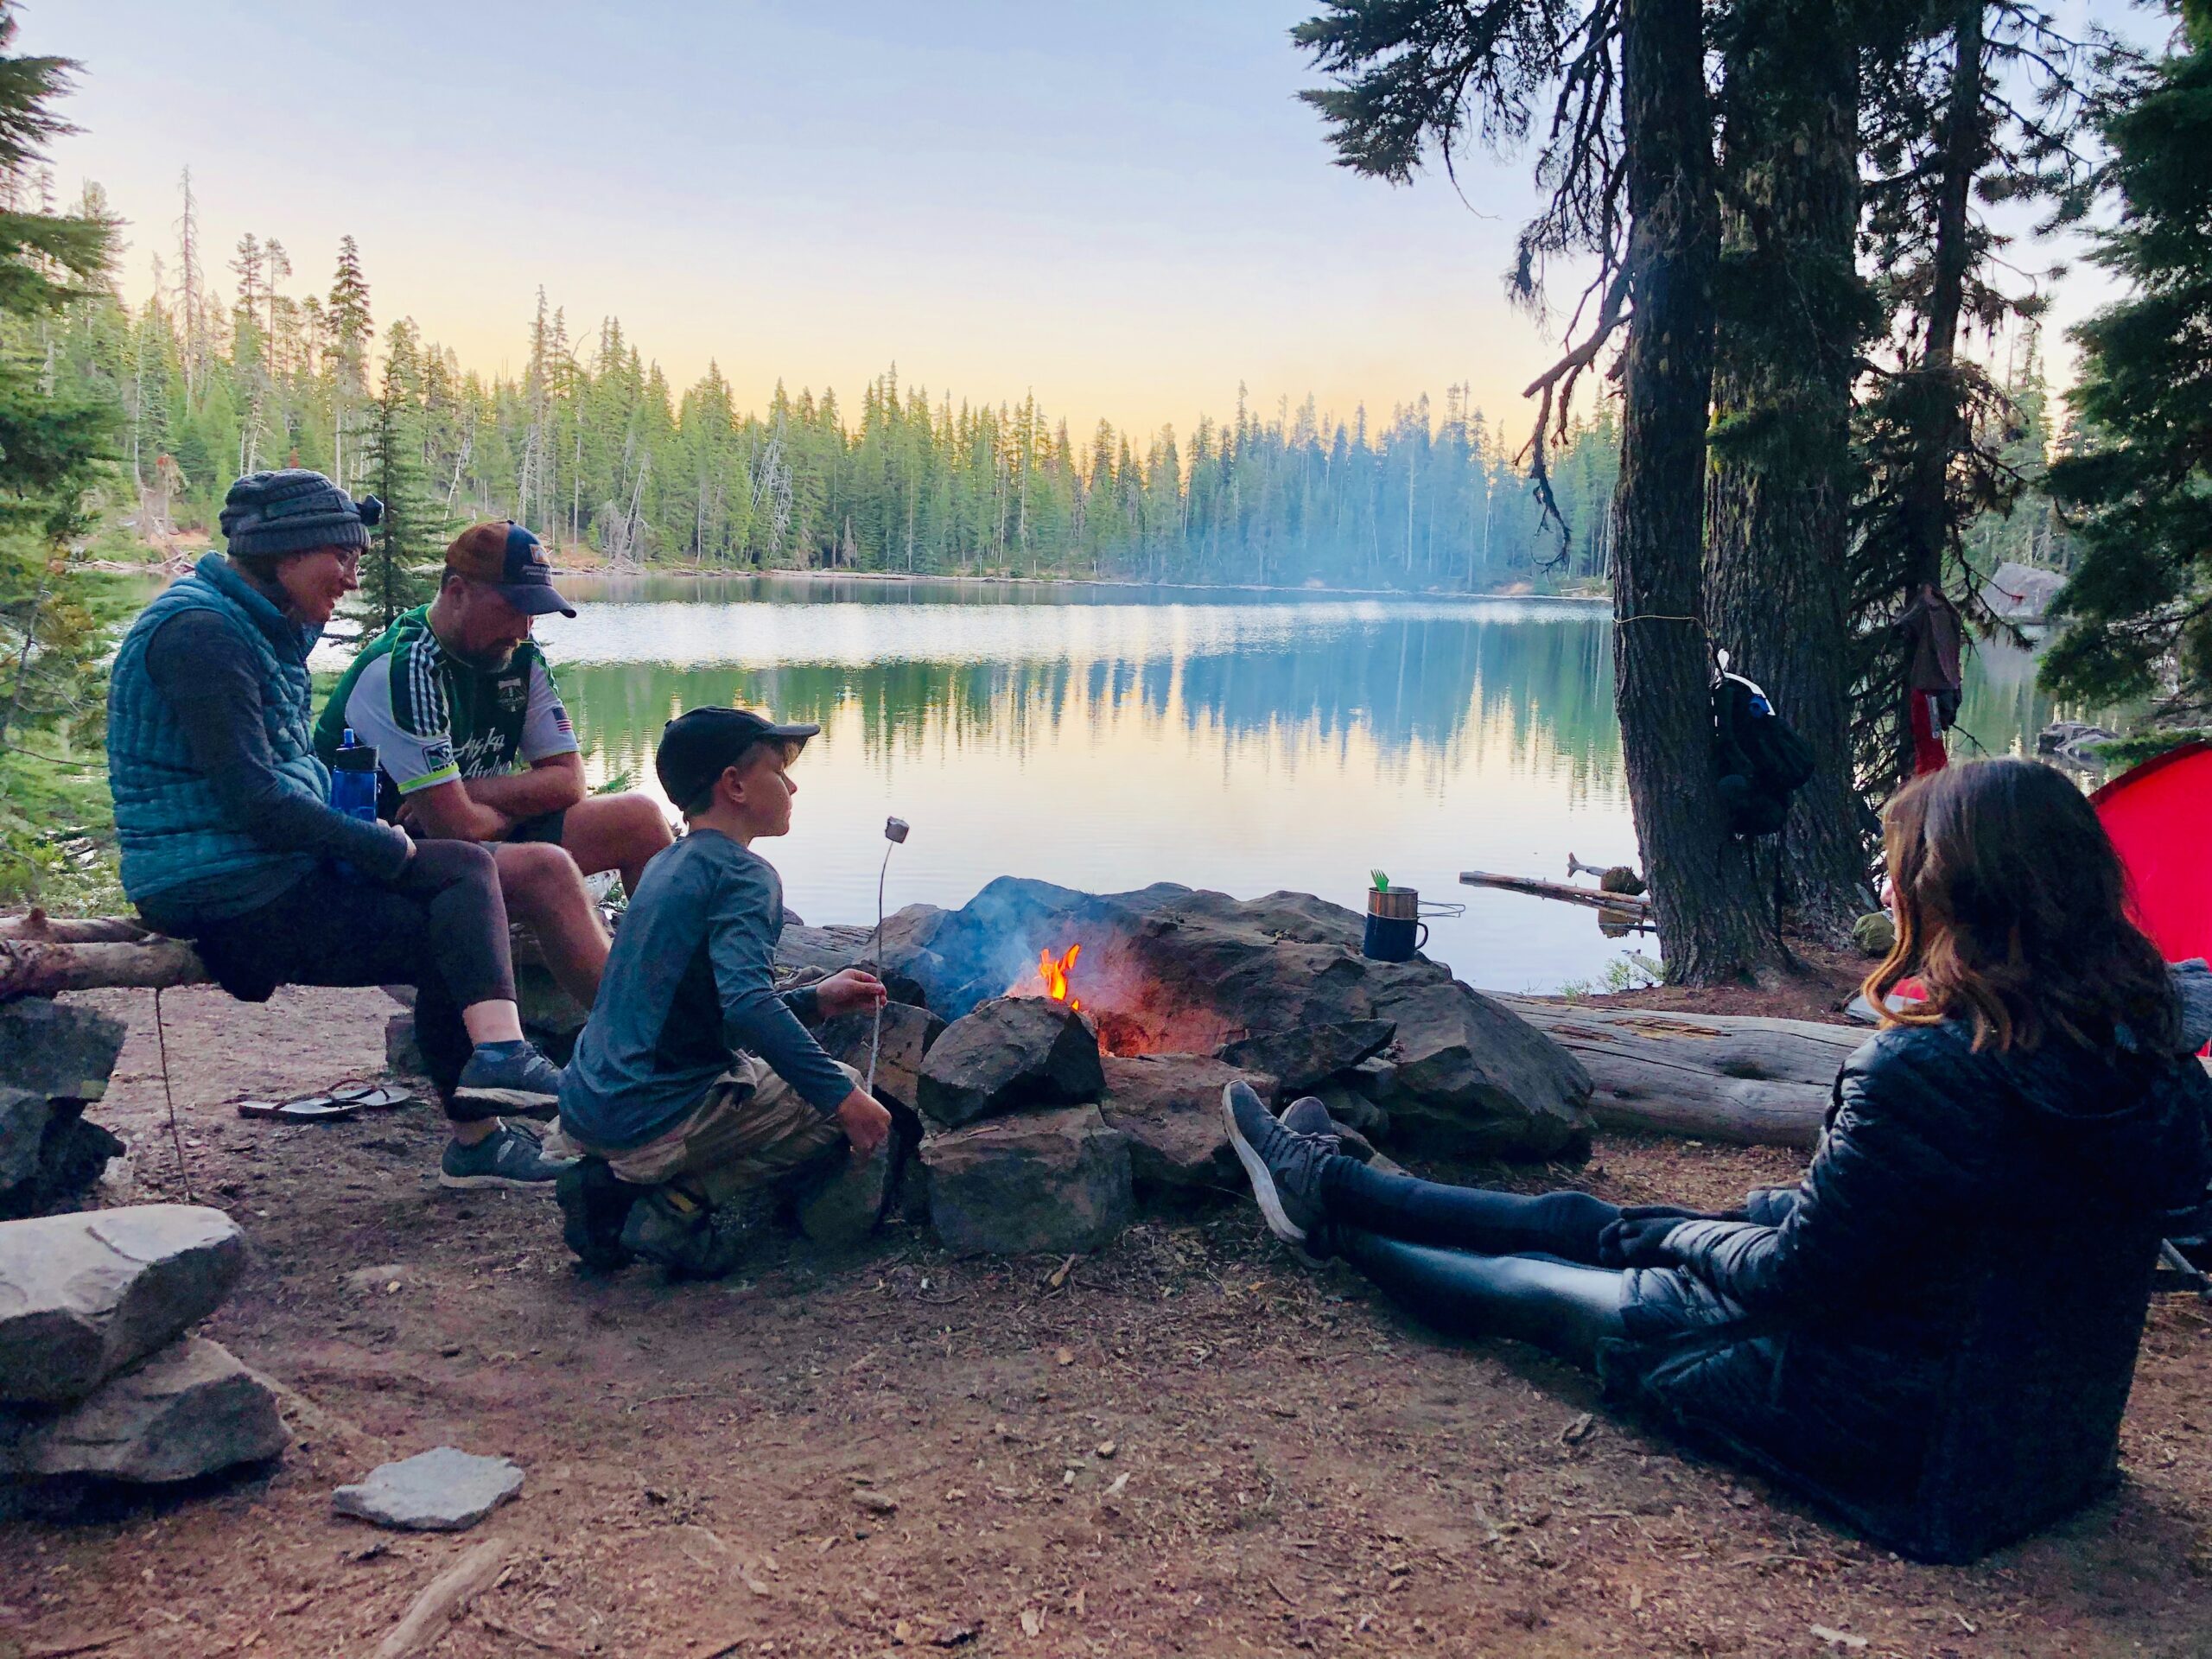 Một trong những phần yêu thích nhất trong trải nghiệm cắm trại là ngắt kết nối với công nghệ và dành thời gian cho các thành viên trong gia đình.(Nguồn: Internet)